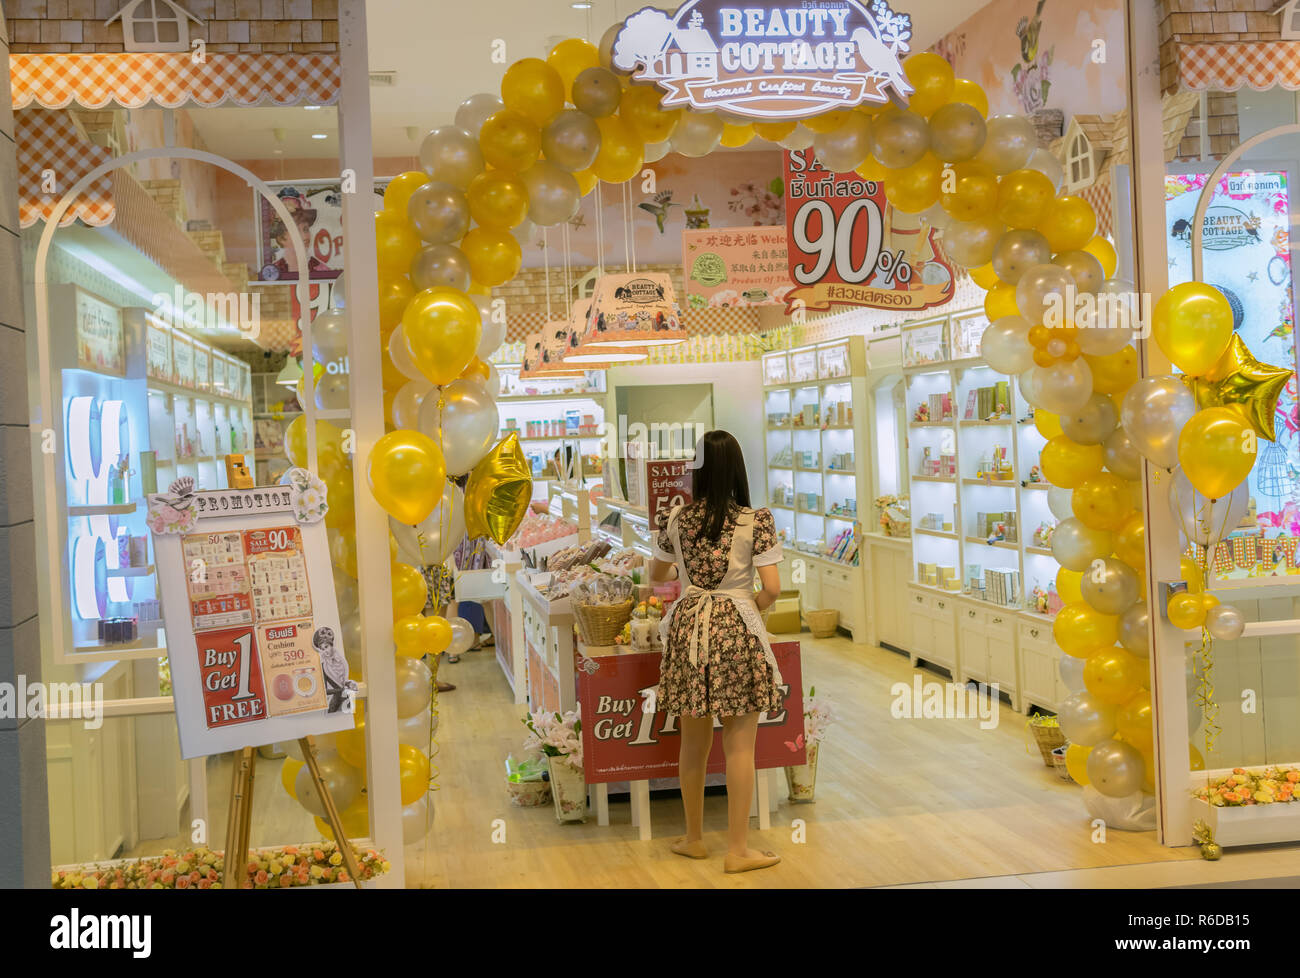 PATTAYA, THAILAND - Oktober 19,2018: Stift 21 In diesem Shop können Sie kaufen Produkte zur Schönheitspflege für Haut und Haar. Der große, moderne Shopping Mall ist in der zweiten Ro Stockfoto